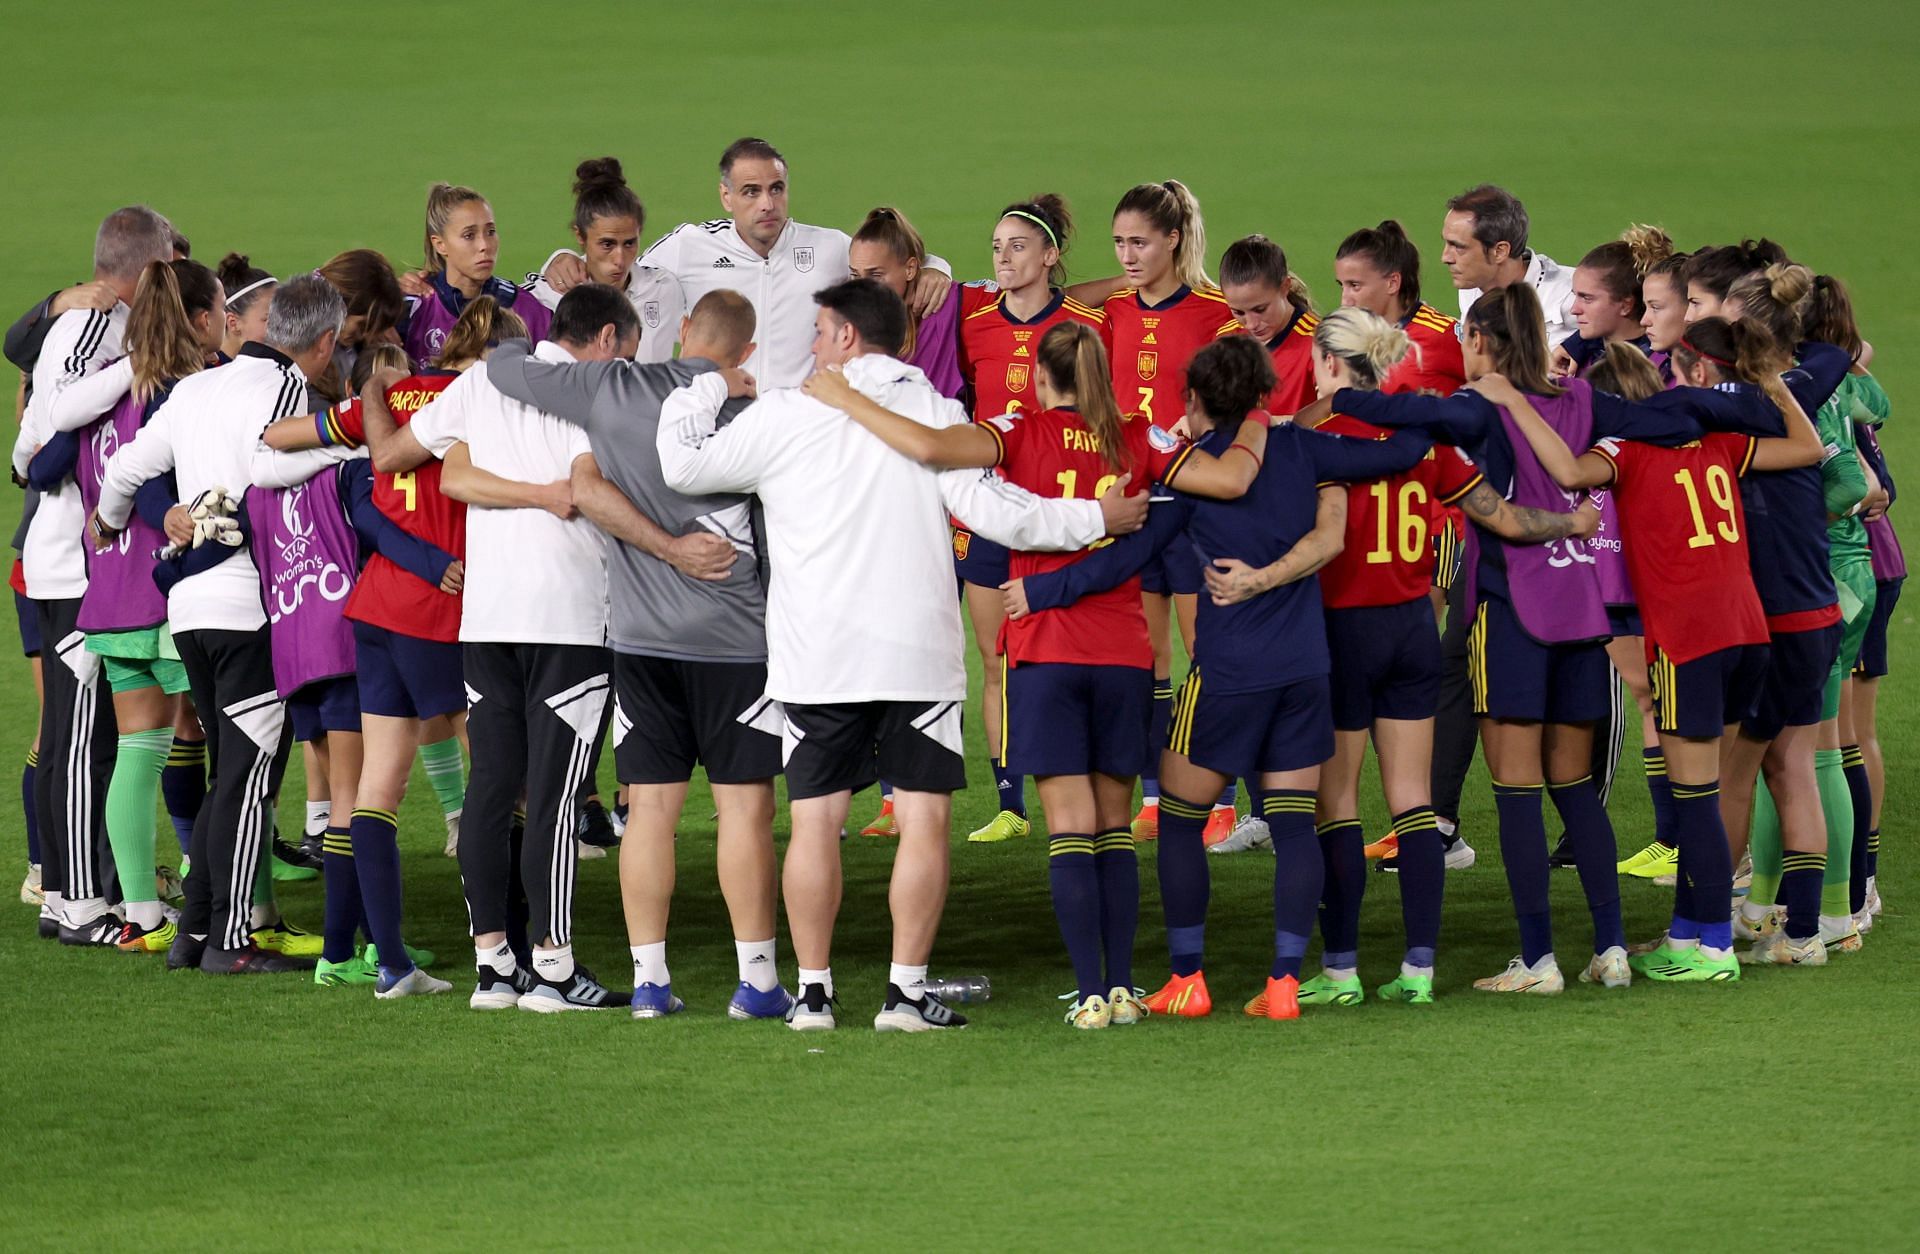 हार के बाद आपस में बातचीत करते स्पेन की टीम के खिलाड़ी और सपोर्ट स्टाफ।